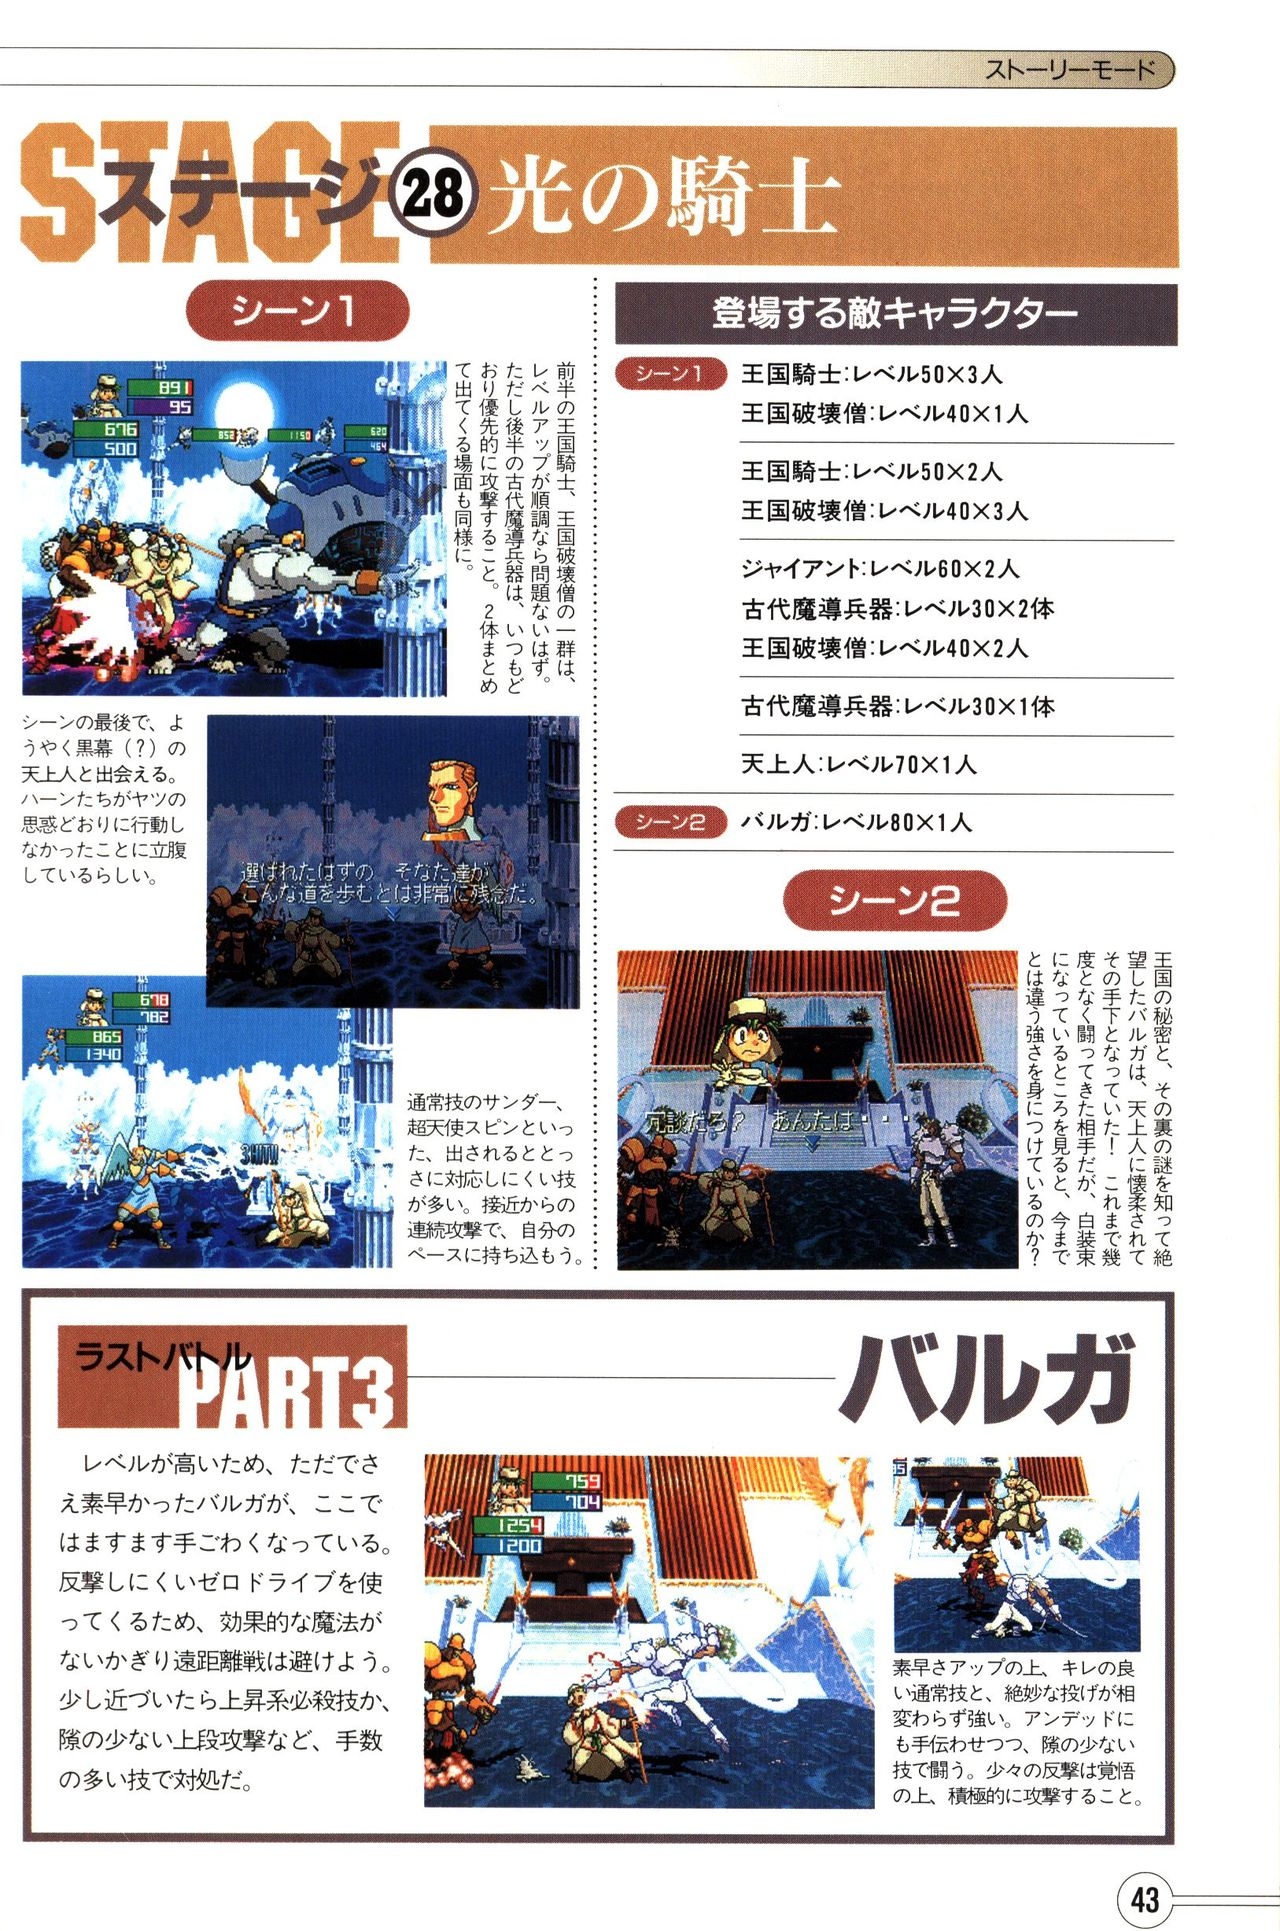 Guardian Heroes Perfect Guide (Sega Saturn magazine books) 45